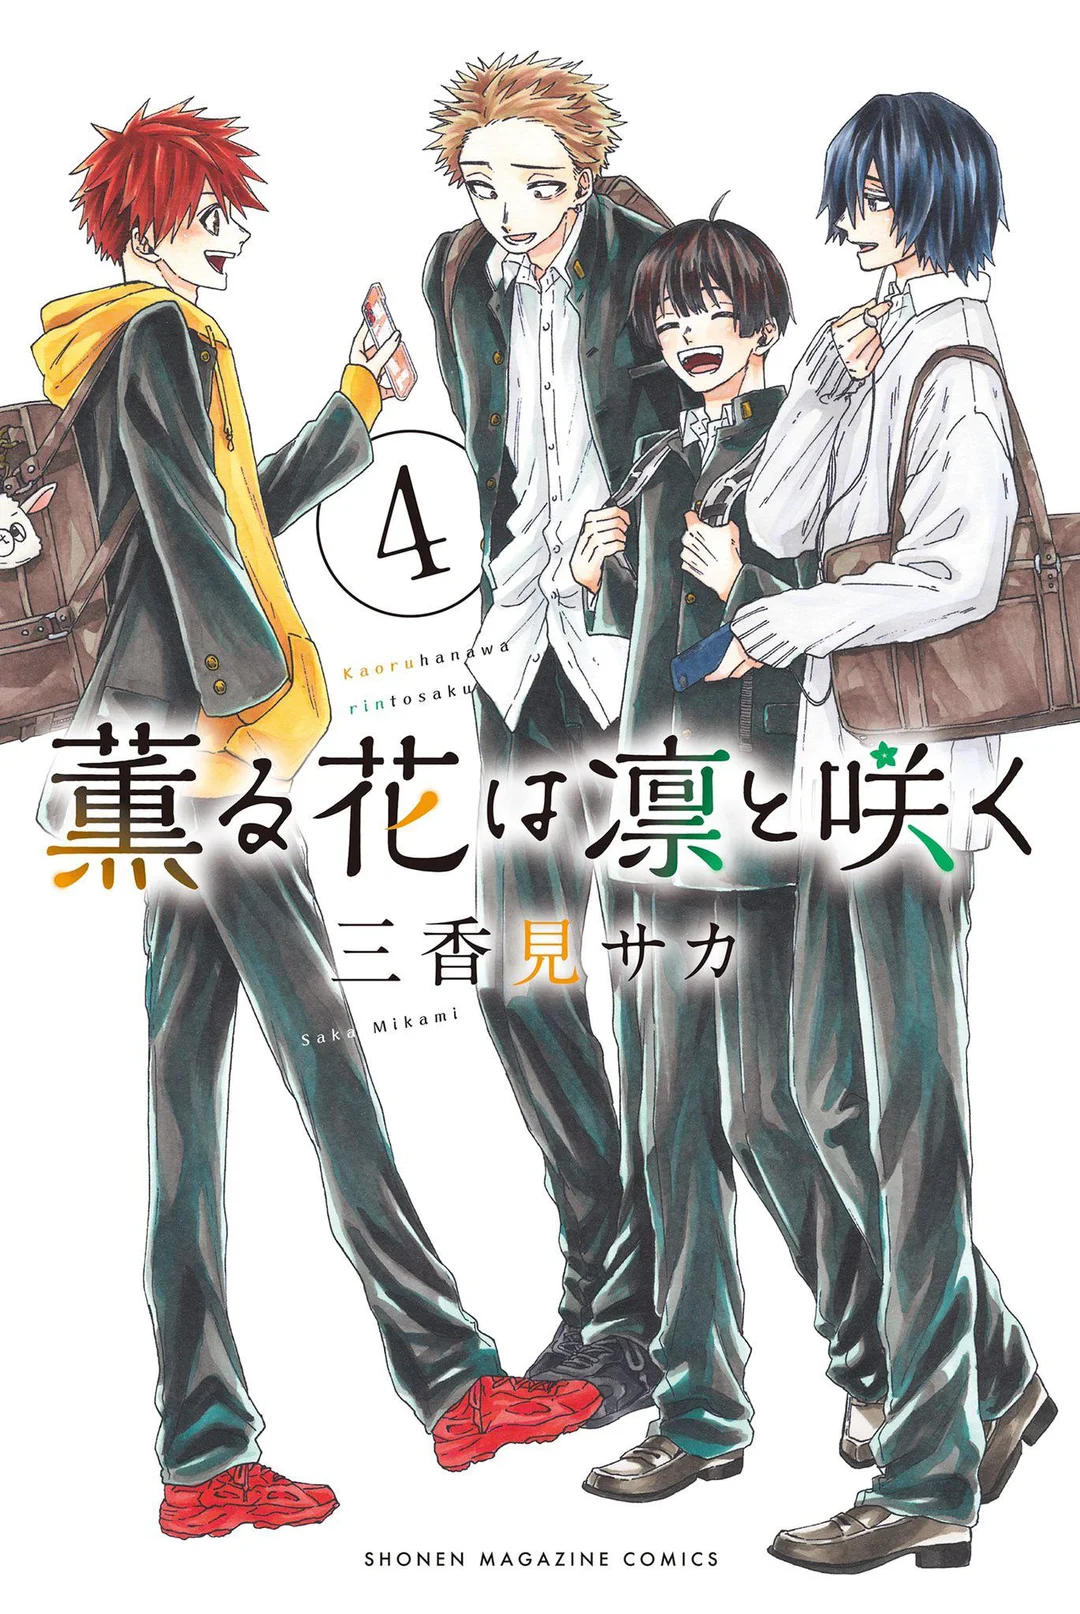 Aoru Hana Wa Rin To Saku Manga Volume 4 | Kaoru Hana wa Rin to Saku Wiki | Fandom